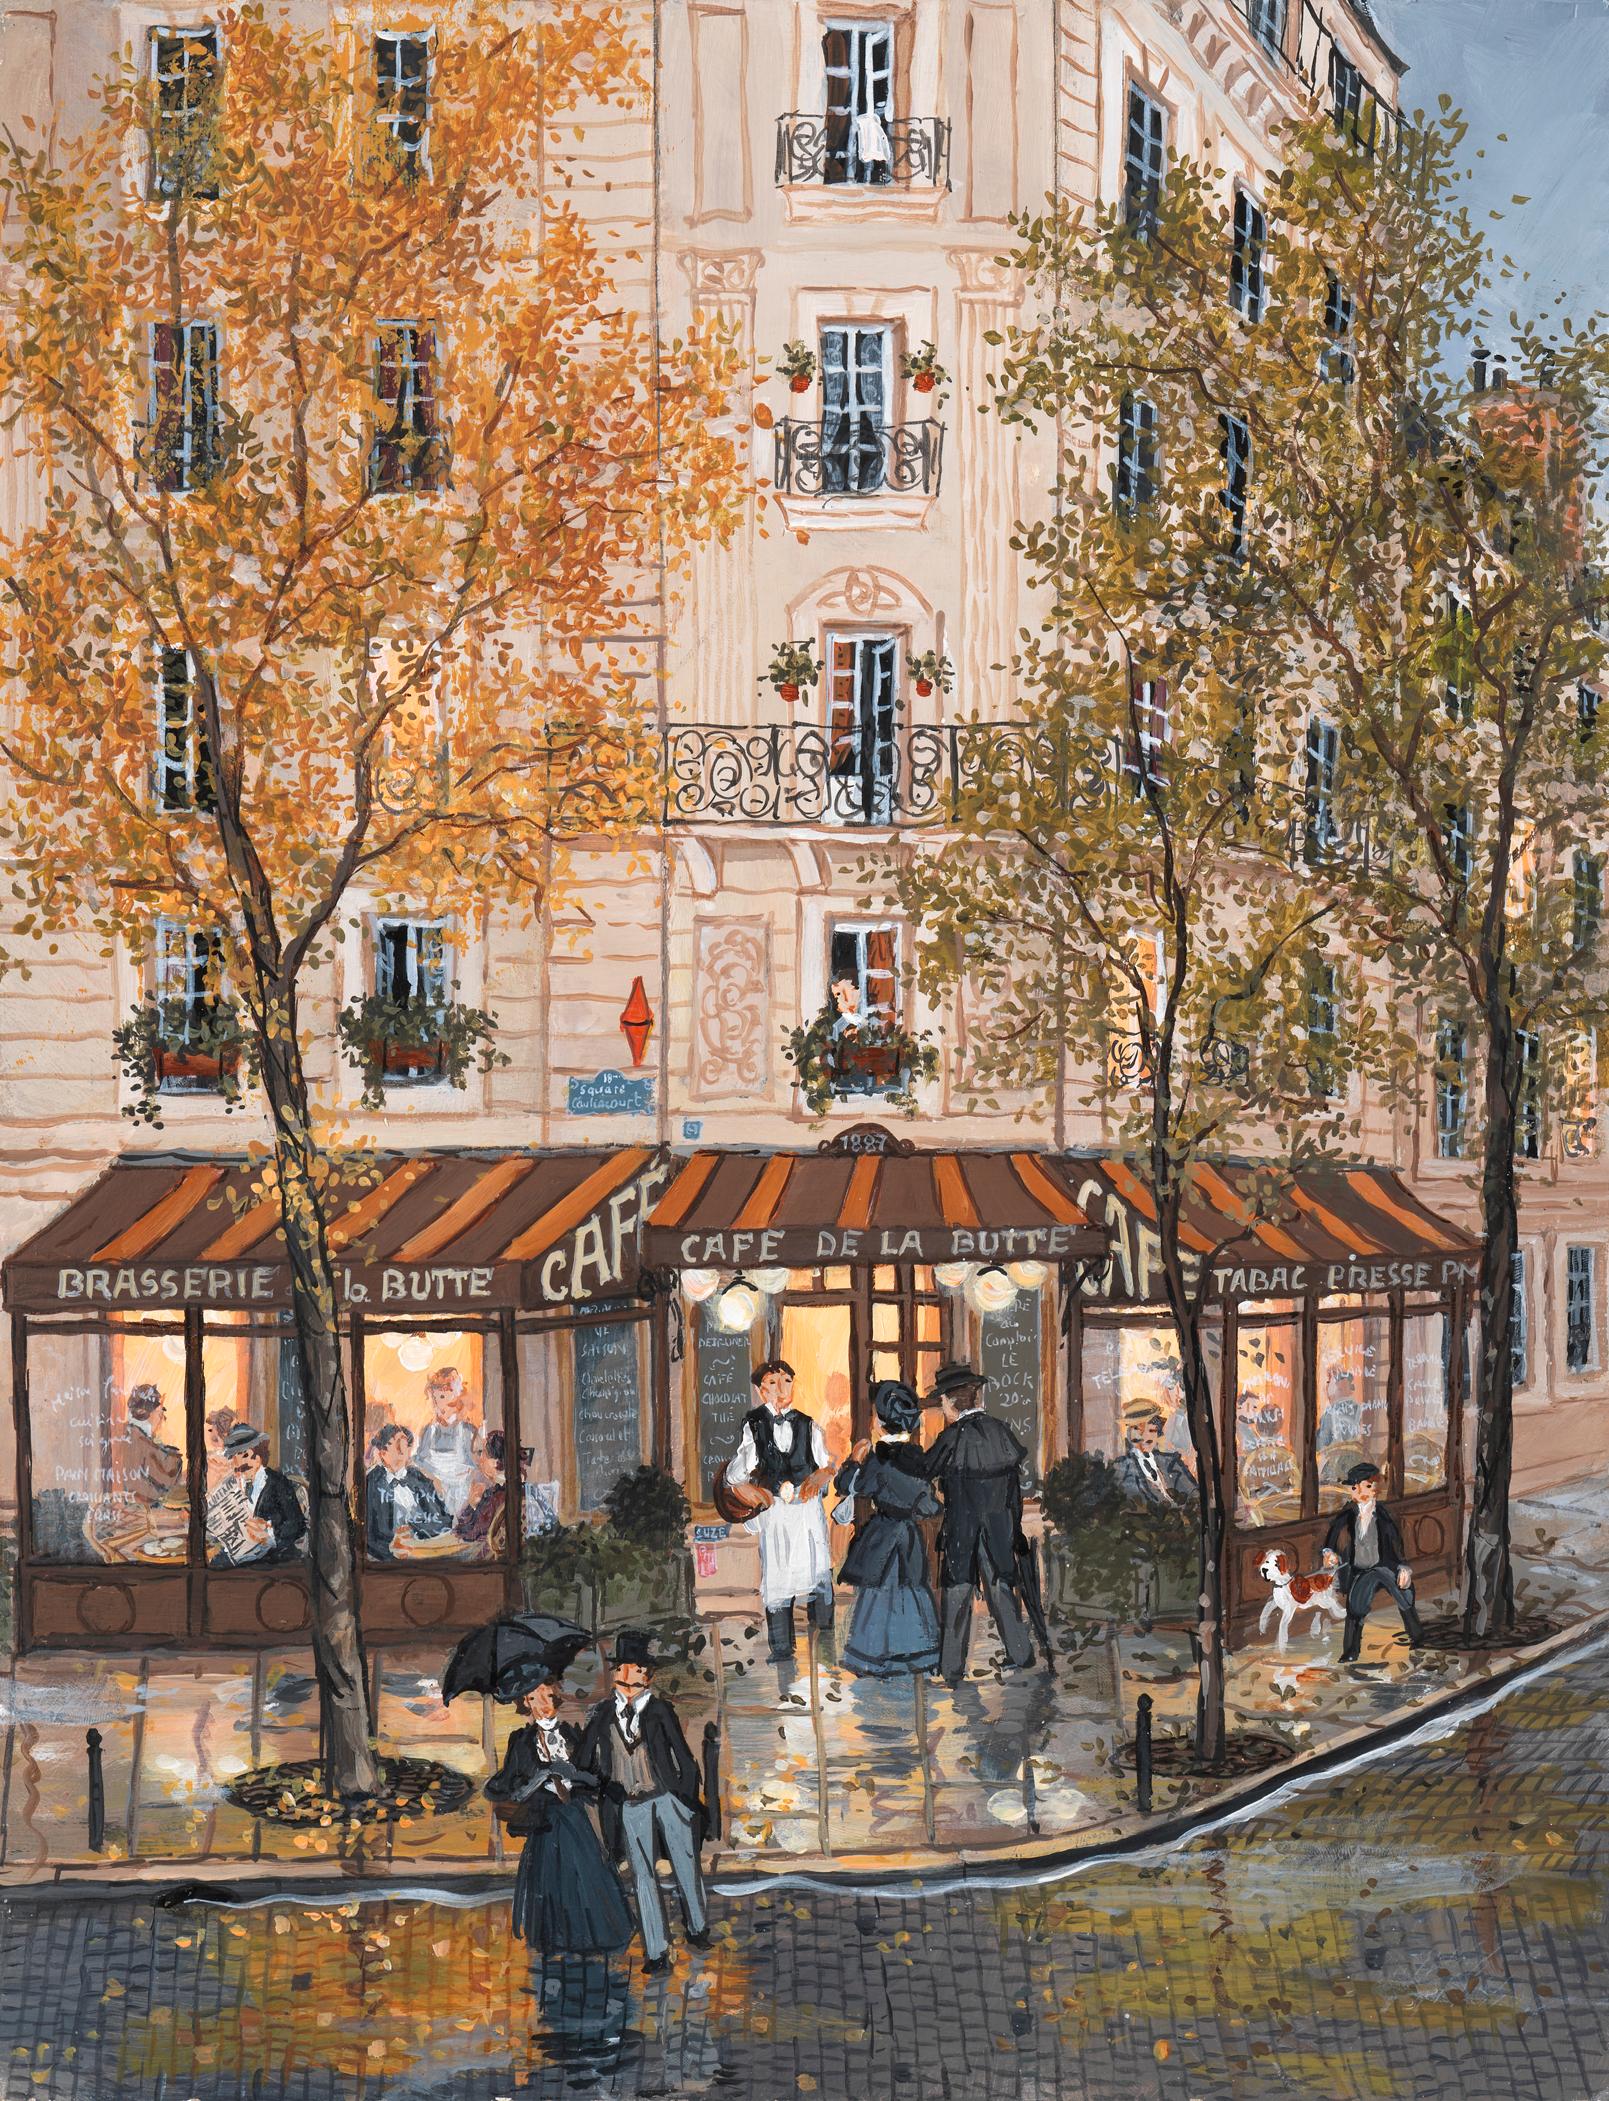 Quand vient l'automne - Painting by Fabienne Delacroix